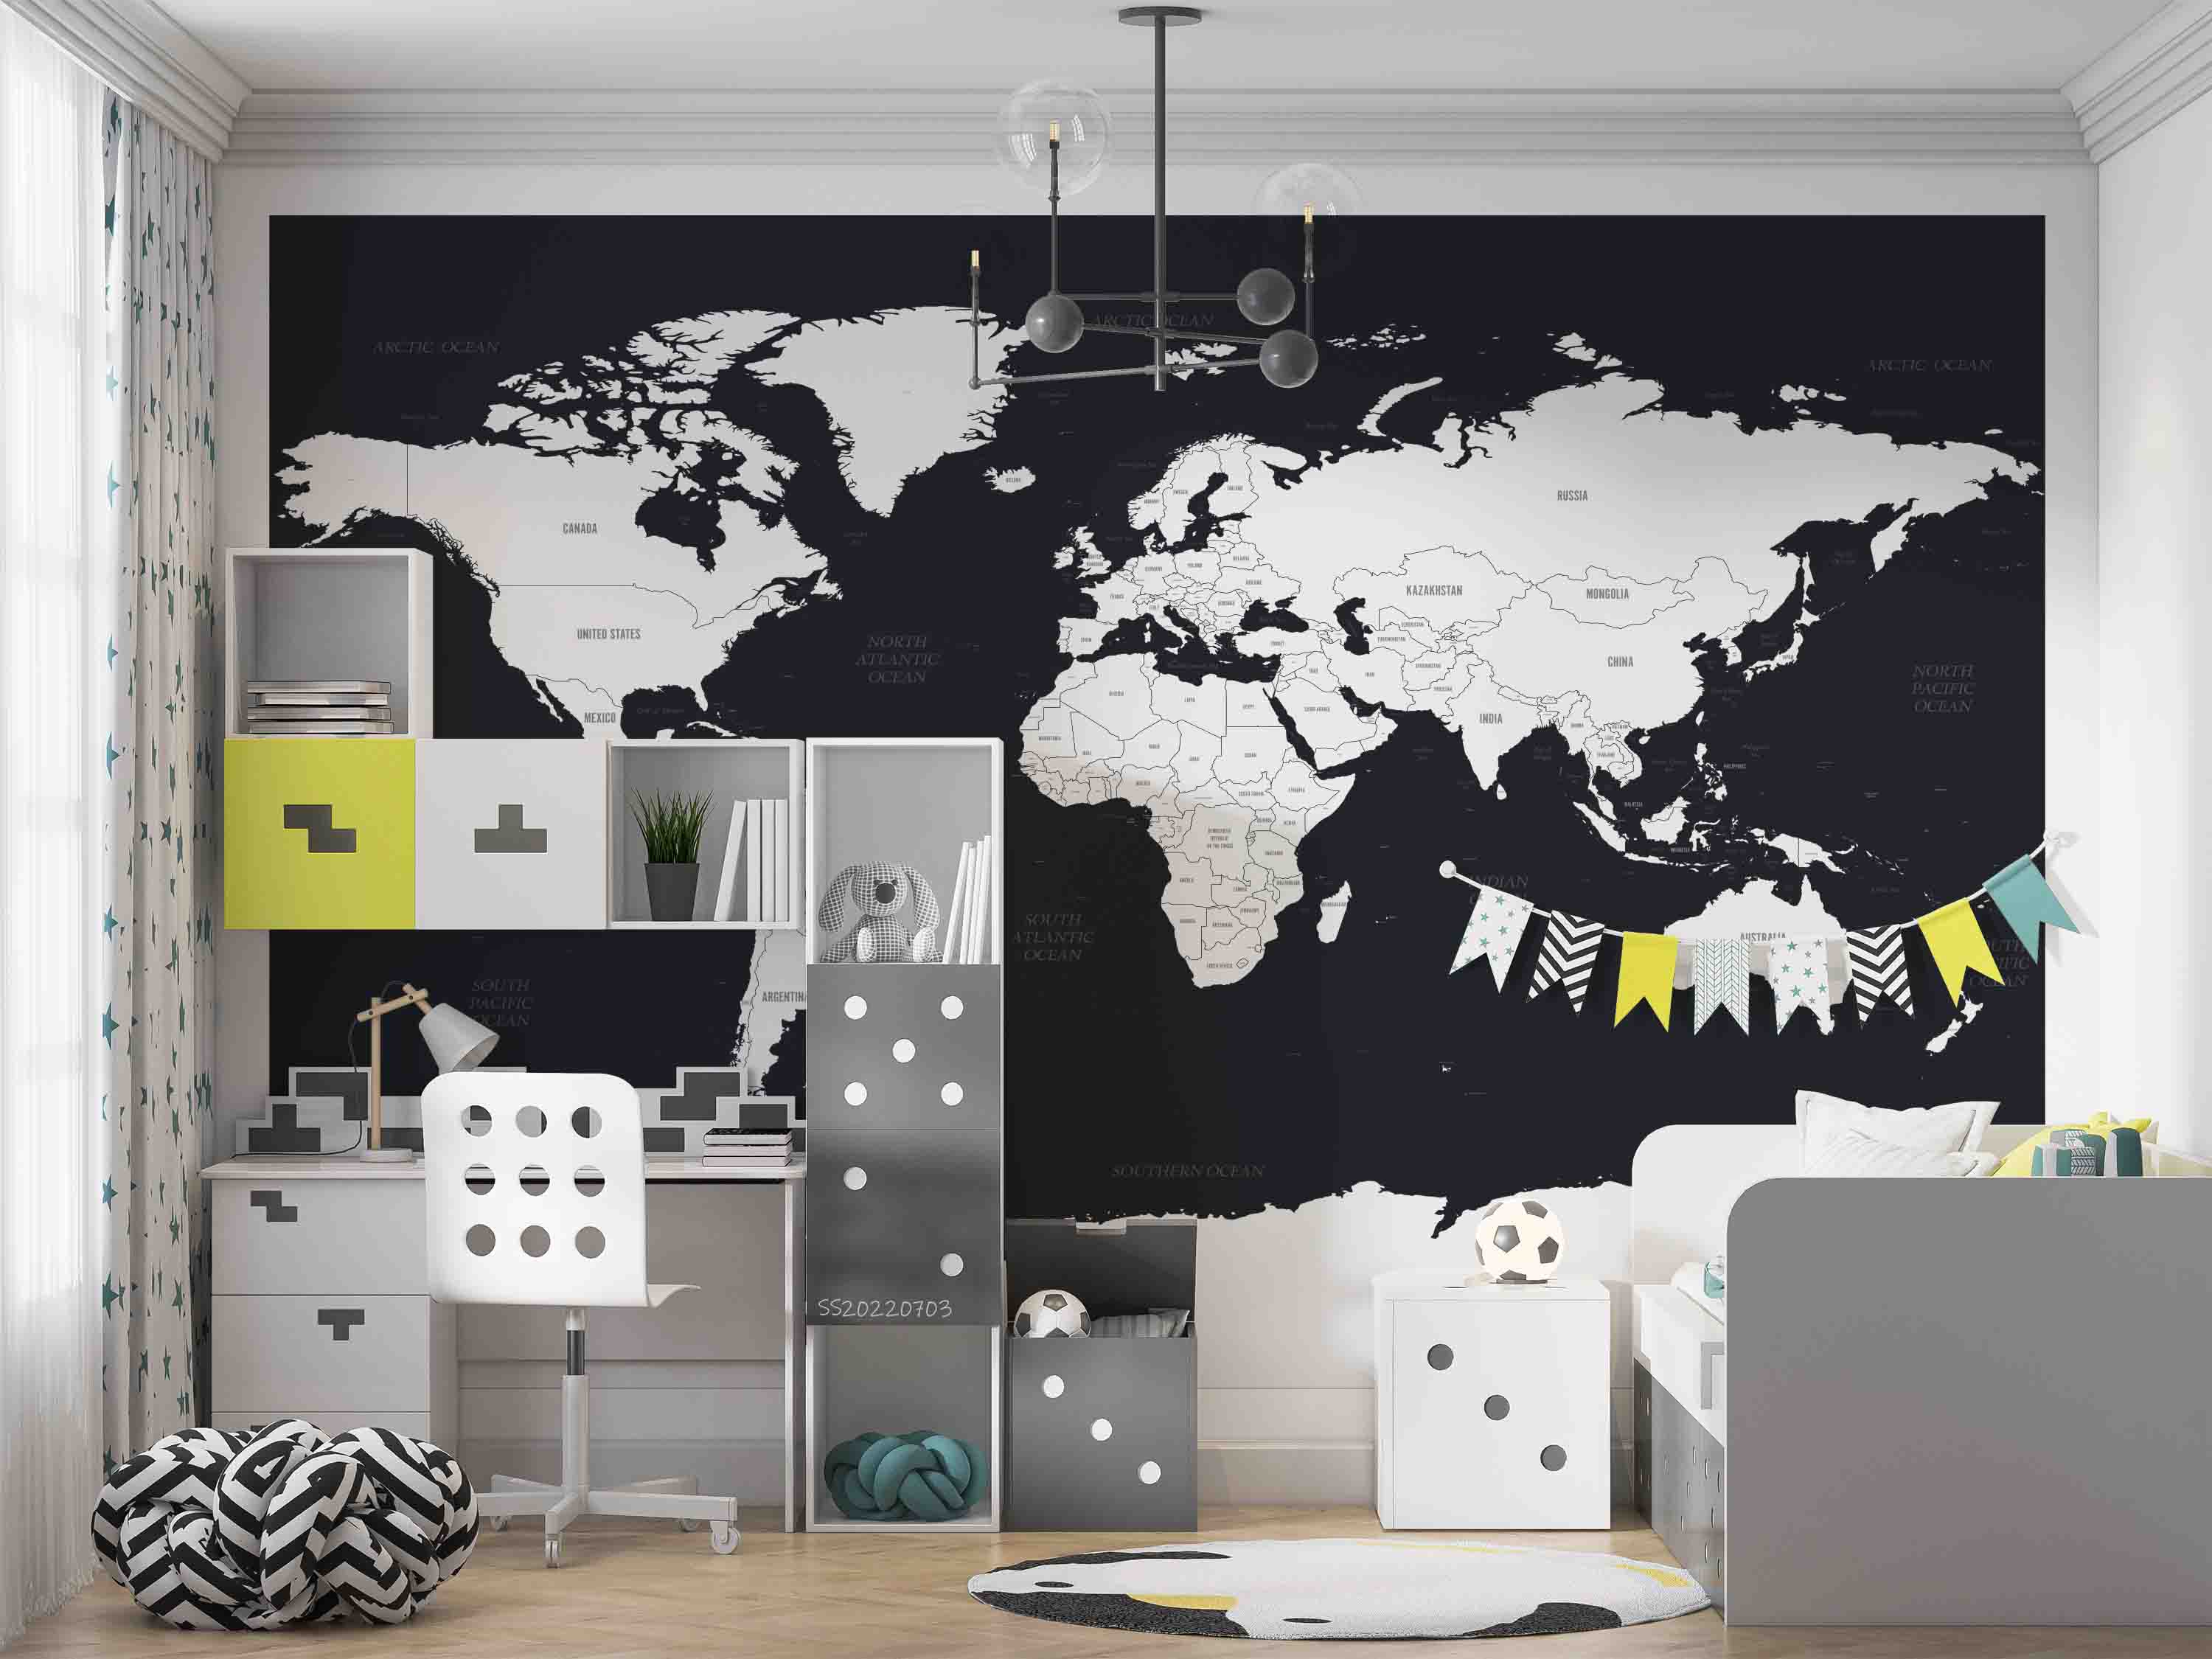 3D World Map Black White Wall Mural Wallpaper GD 1096- Jess Art Decoration